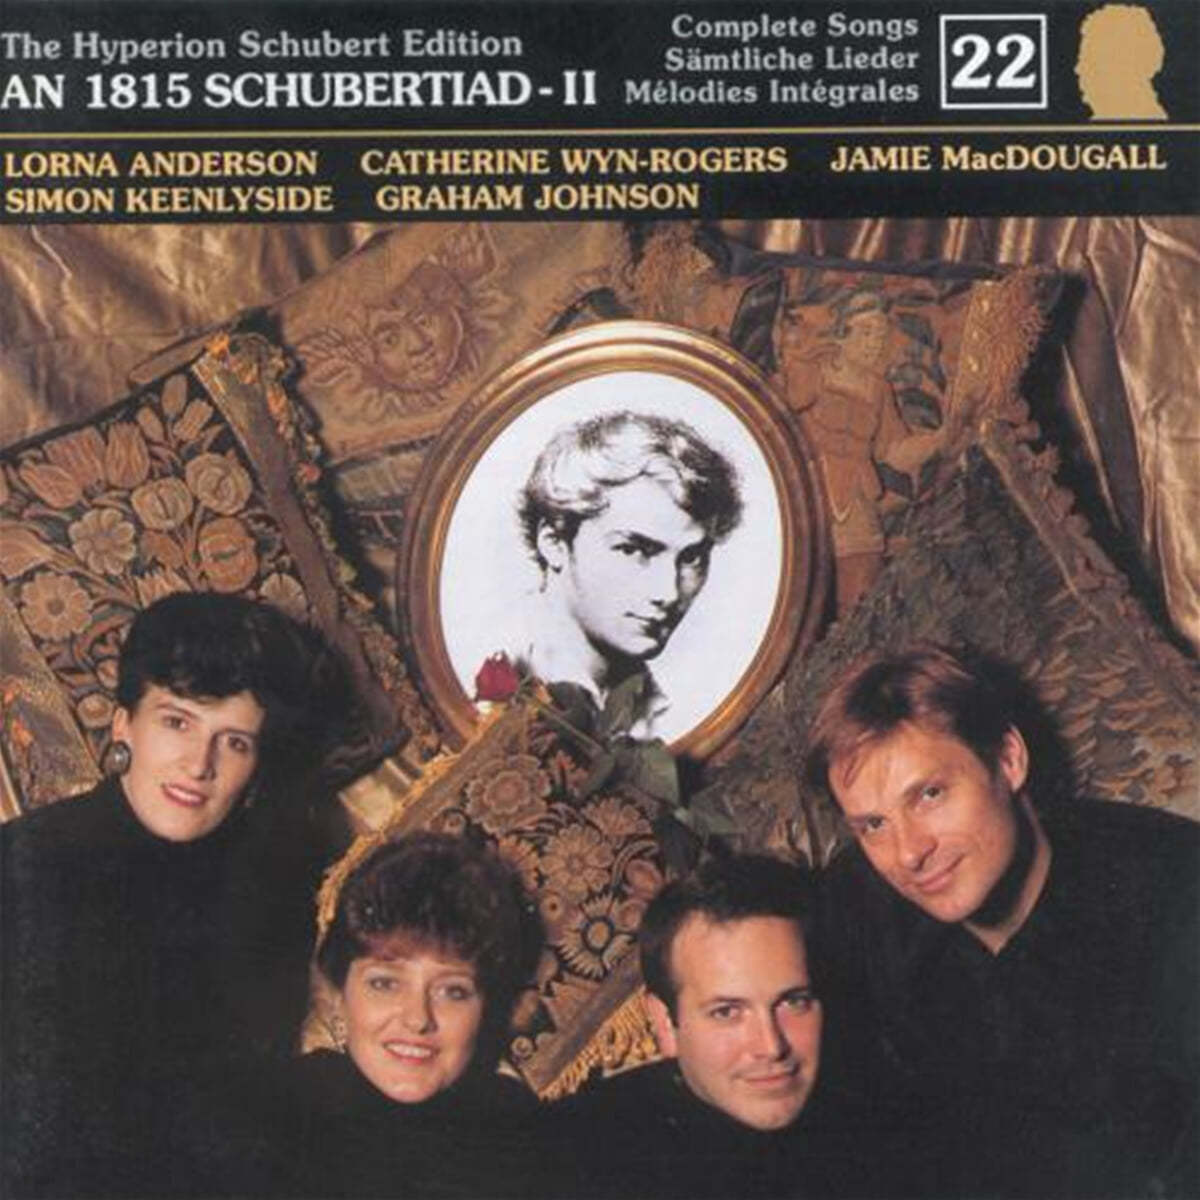 슈베르트: 가곡집 22집 (Schubert: The Complete Songs Vol. 22)